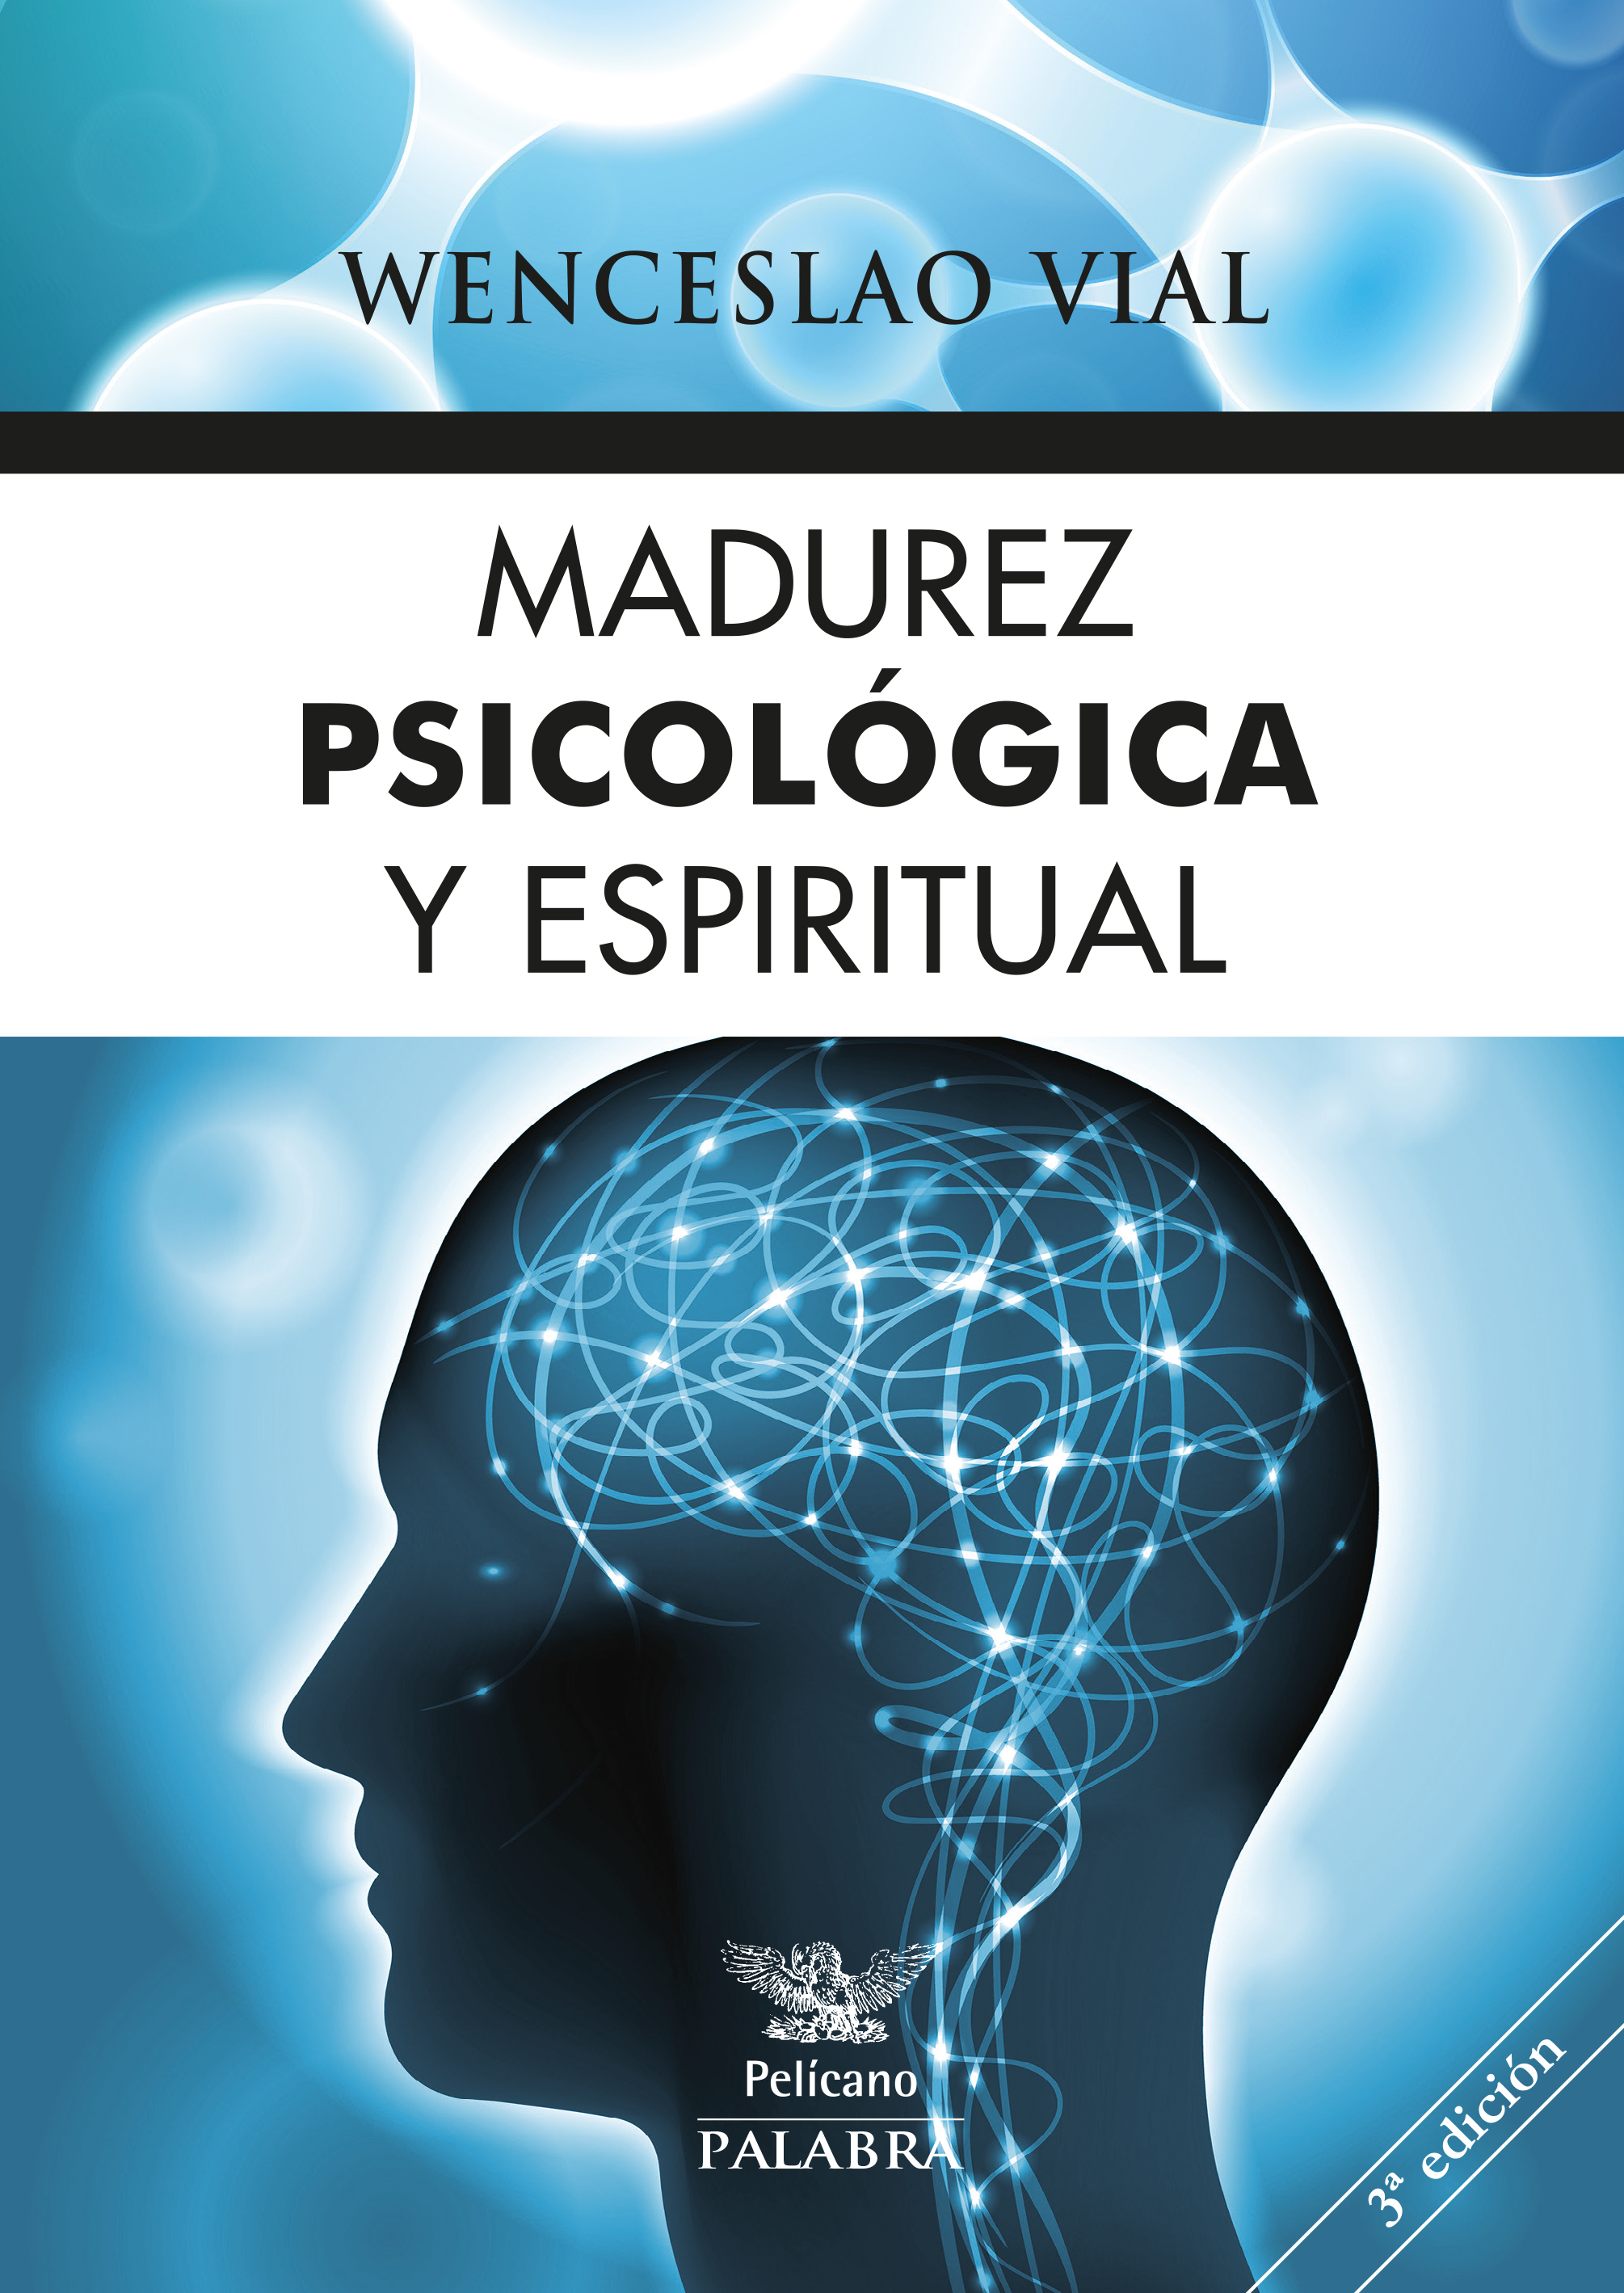 1647 - Madurez psicológica y espiritual (Wenceslao Vial) - (Audiolibro Voz Humana)